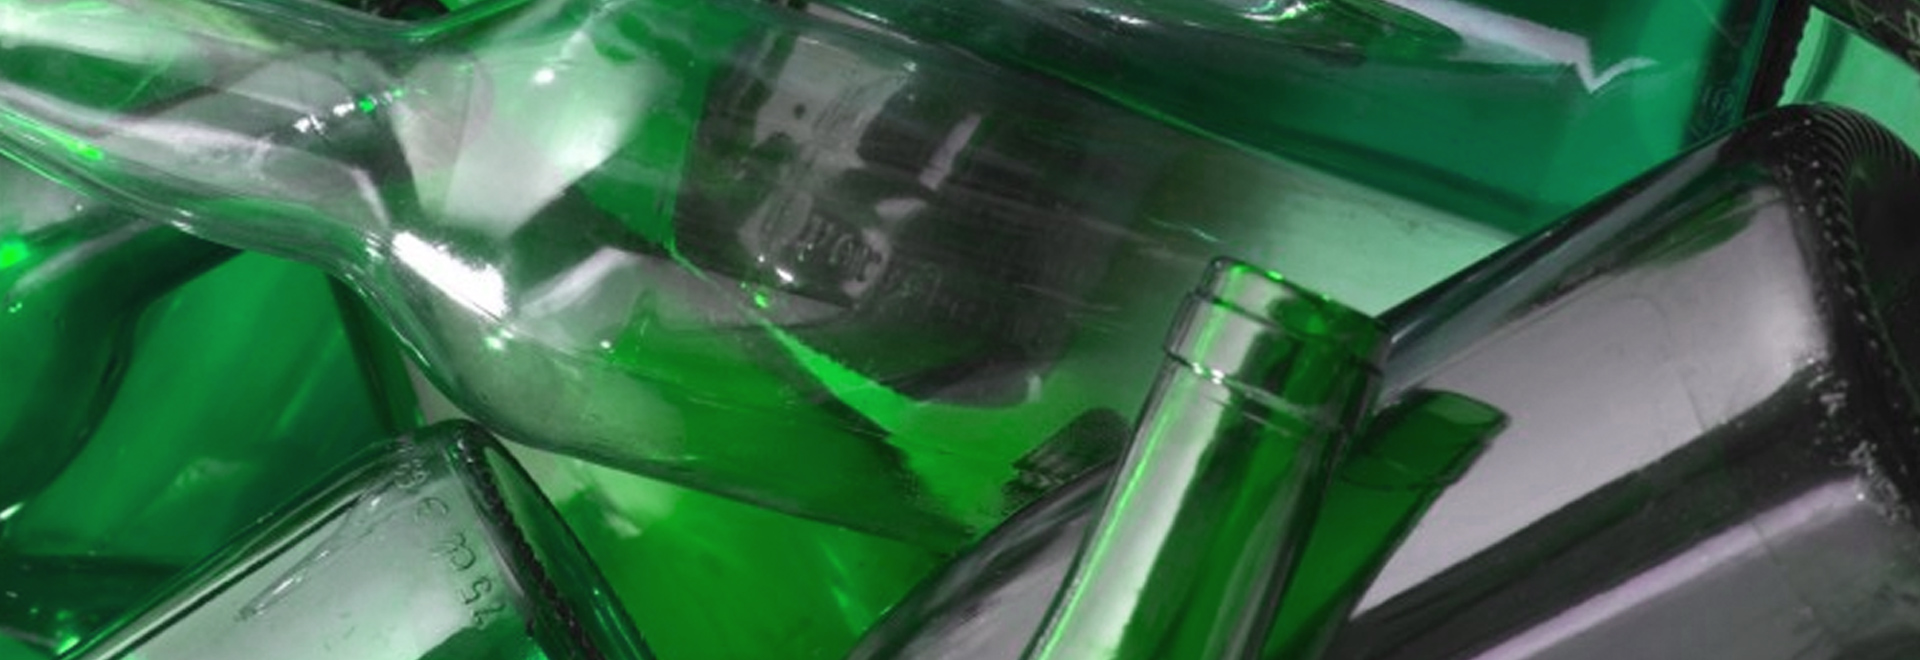 Comunicato stampa: Una bottiglia virtuale lanciata nel mare di Internet per far scoprire tutte le qualità del vetro